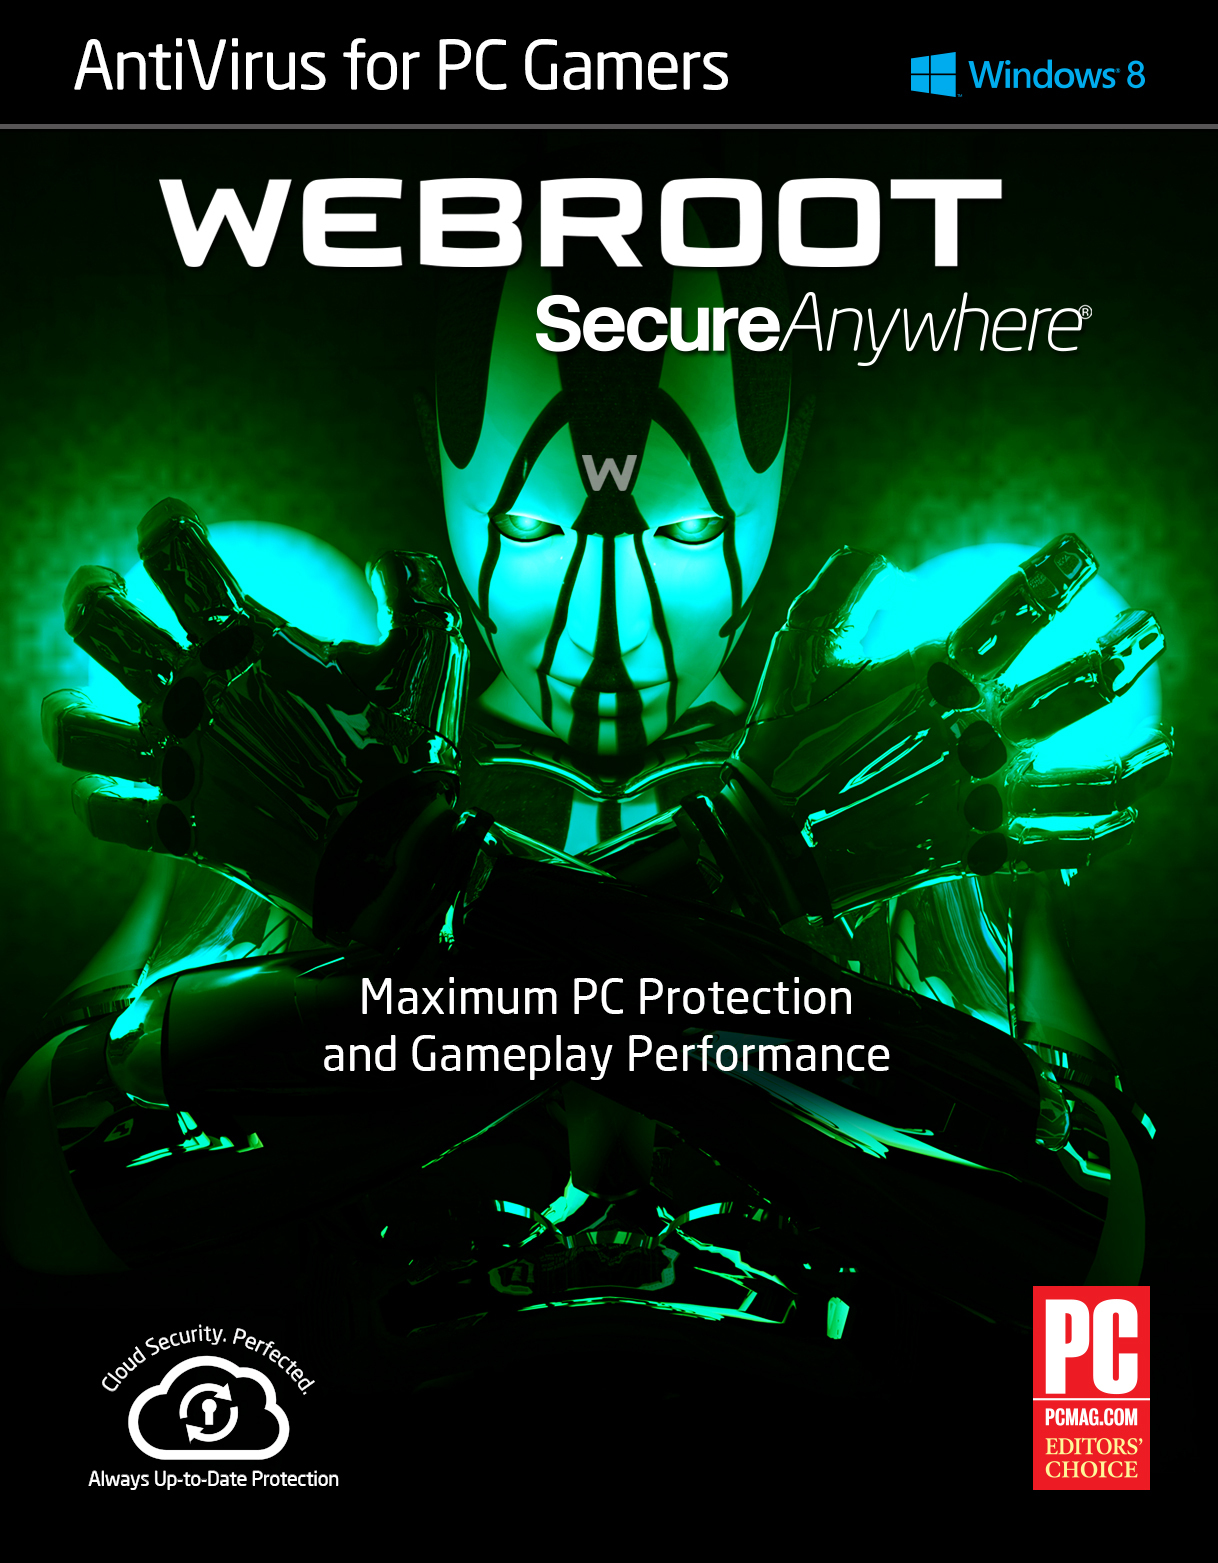 webroot antivirus for pc gamers